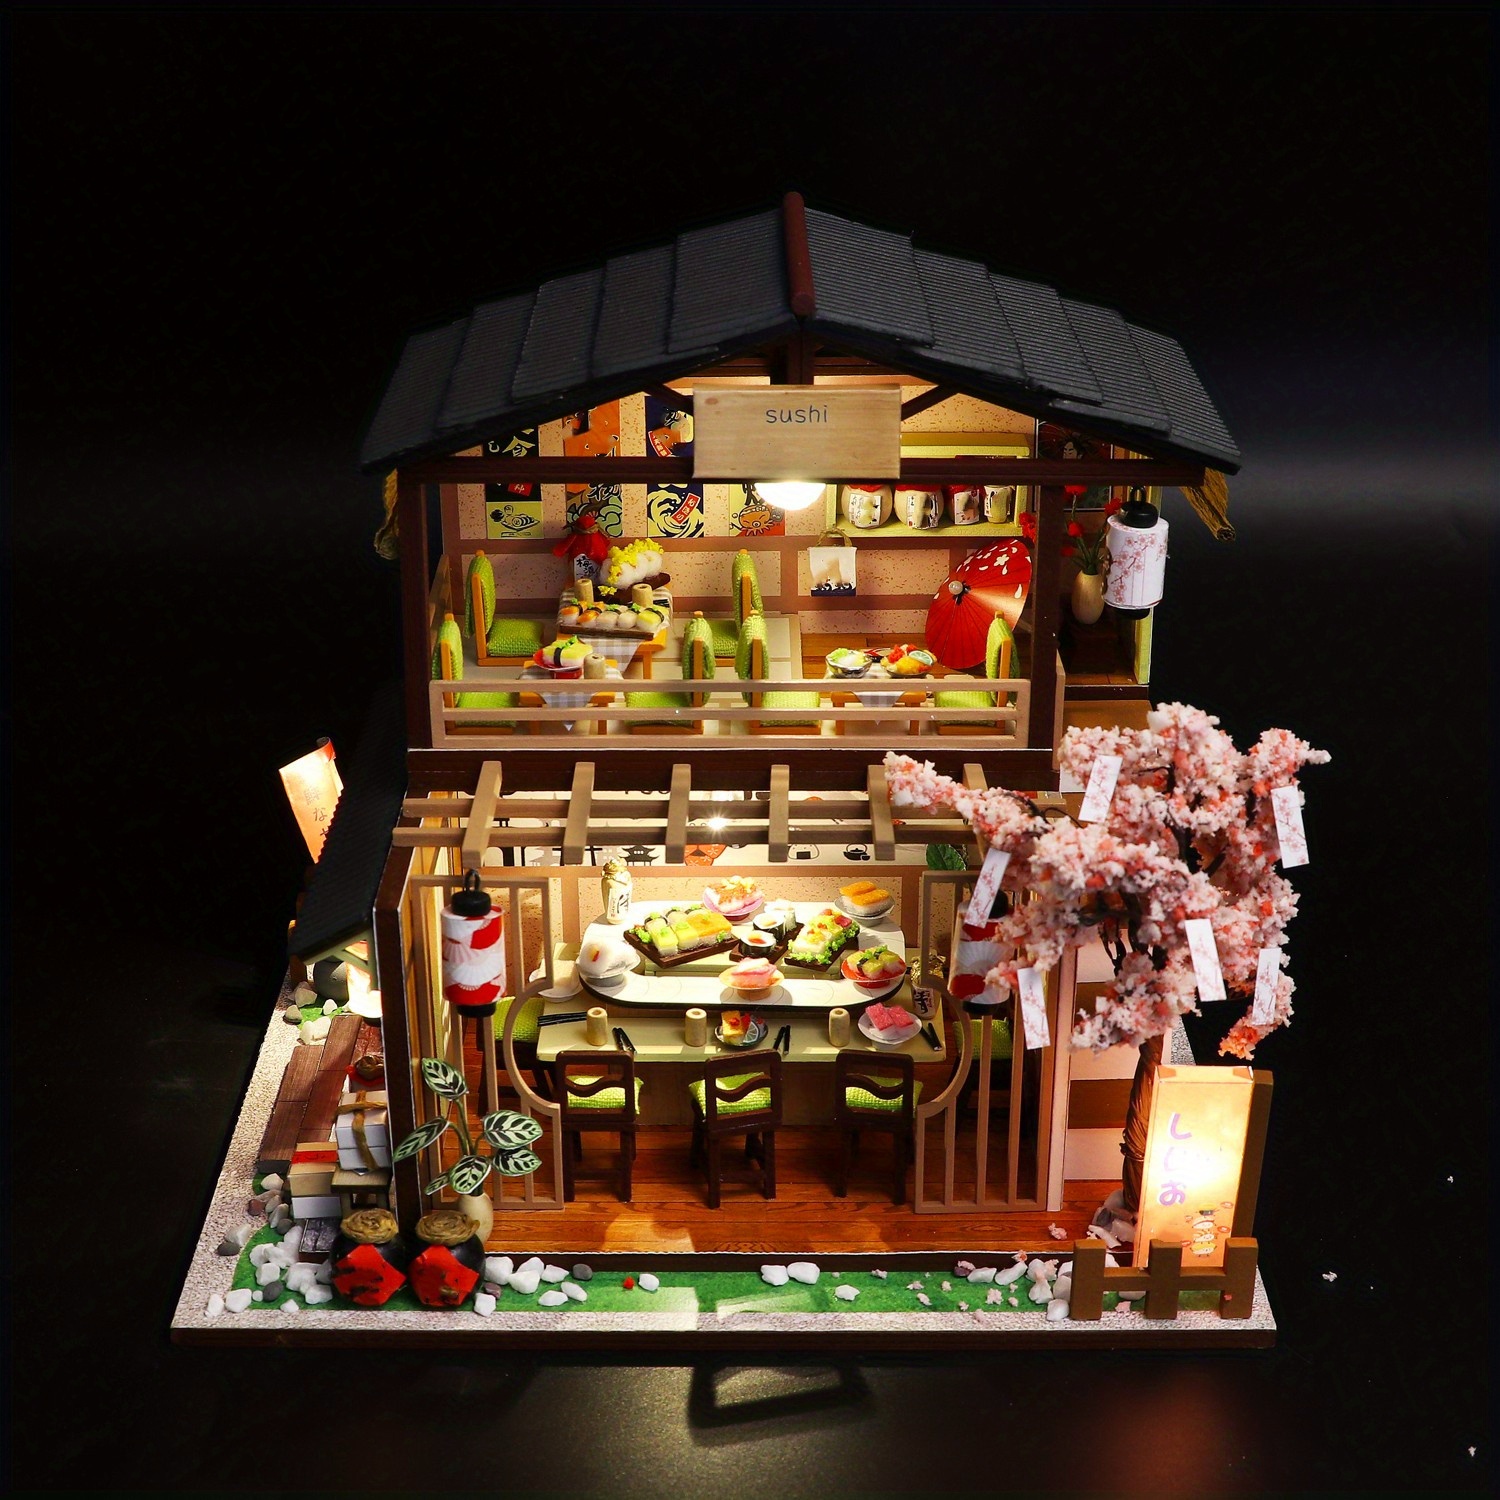 Maison miniature faite main Restaurant de Sushi -  France